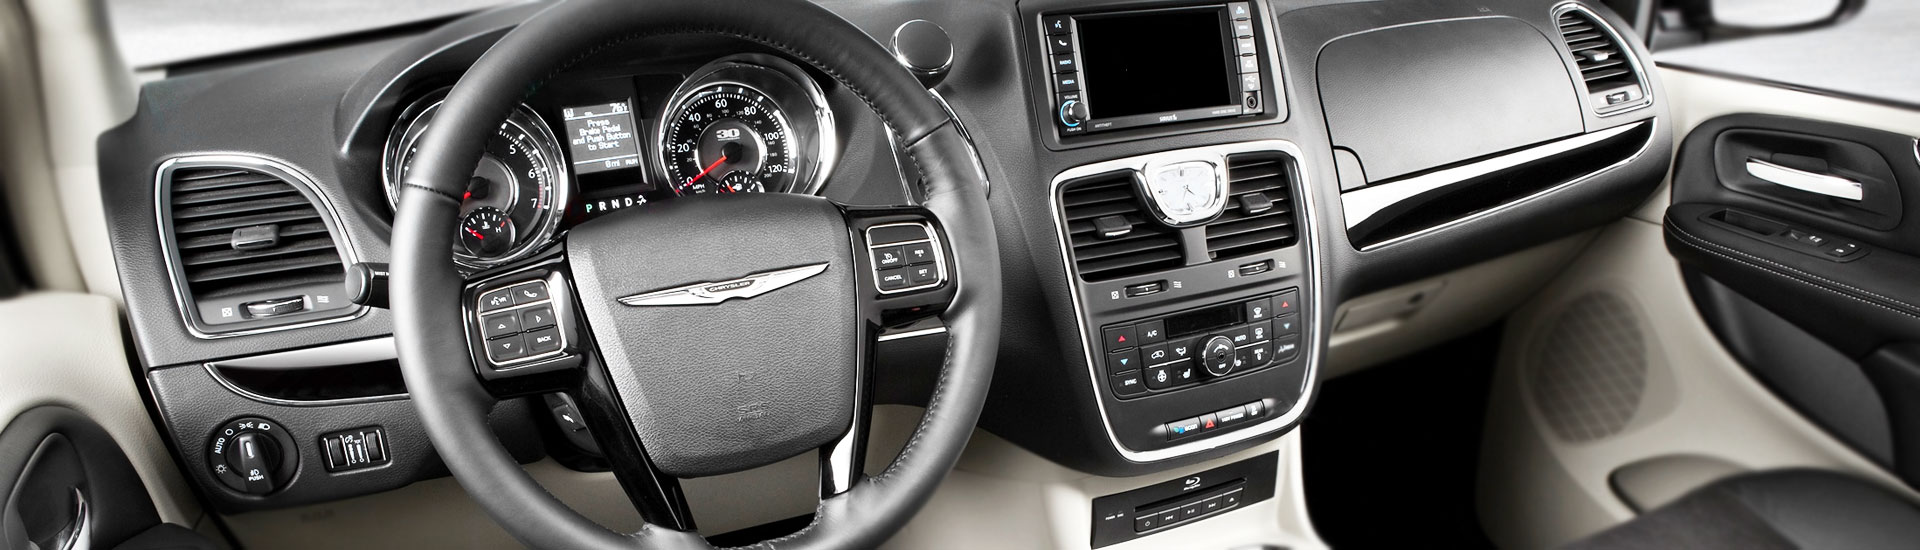 2014 Chrysler 200 Custom Dash Kits